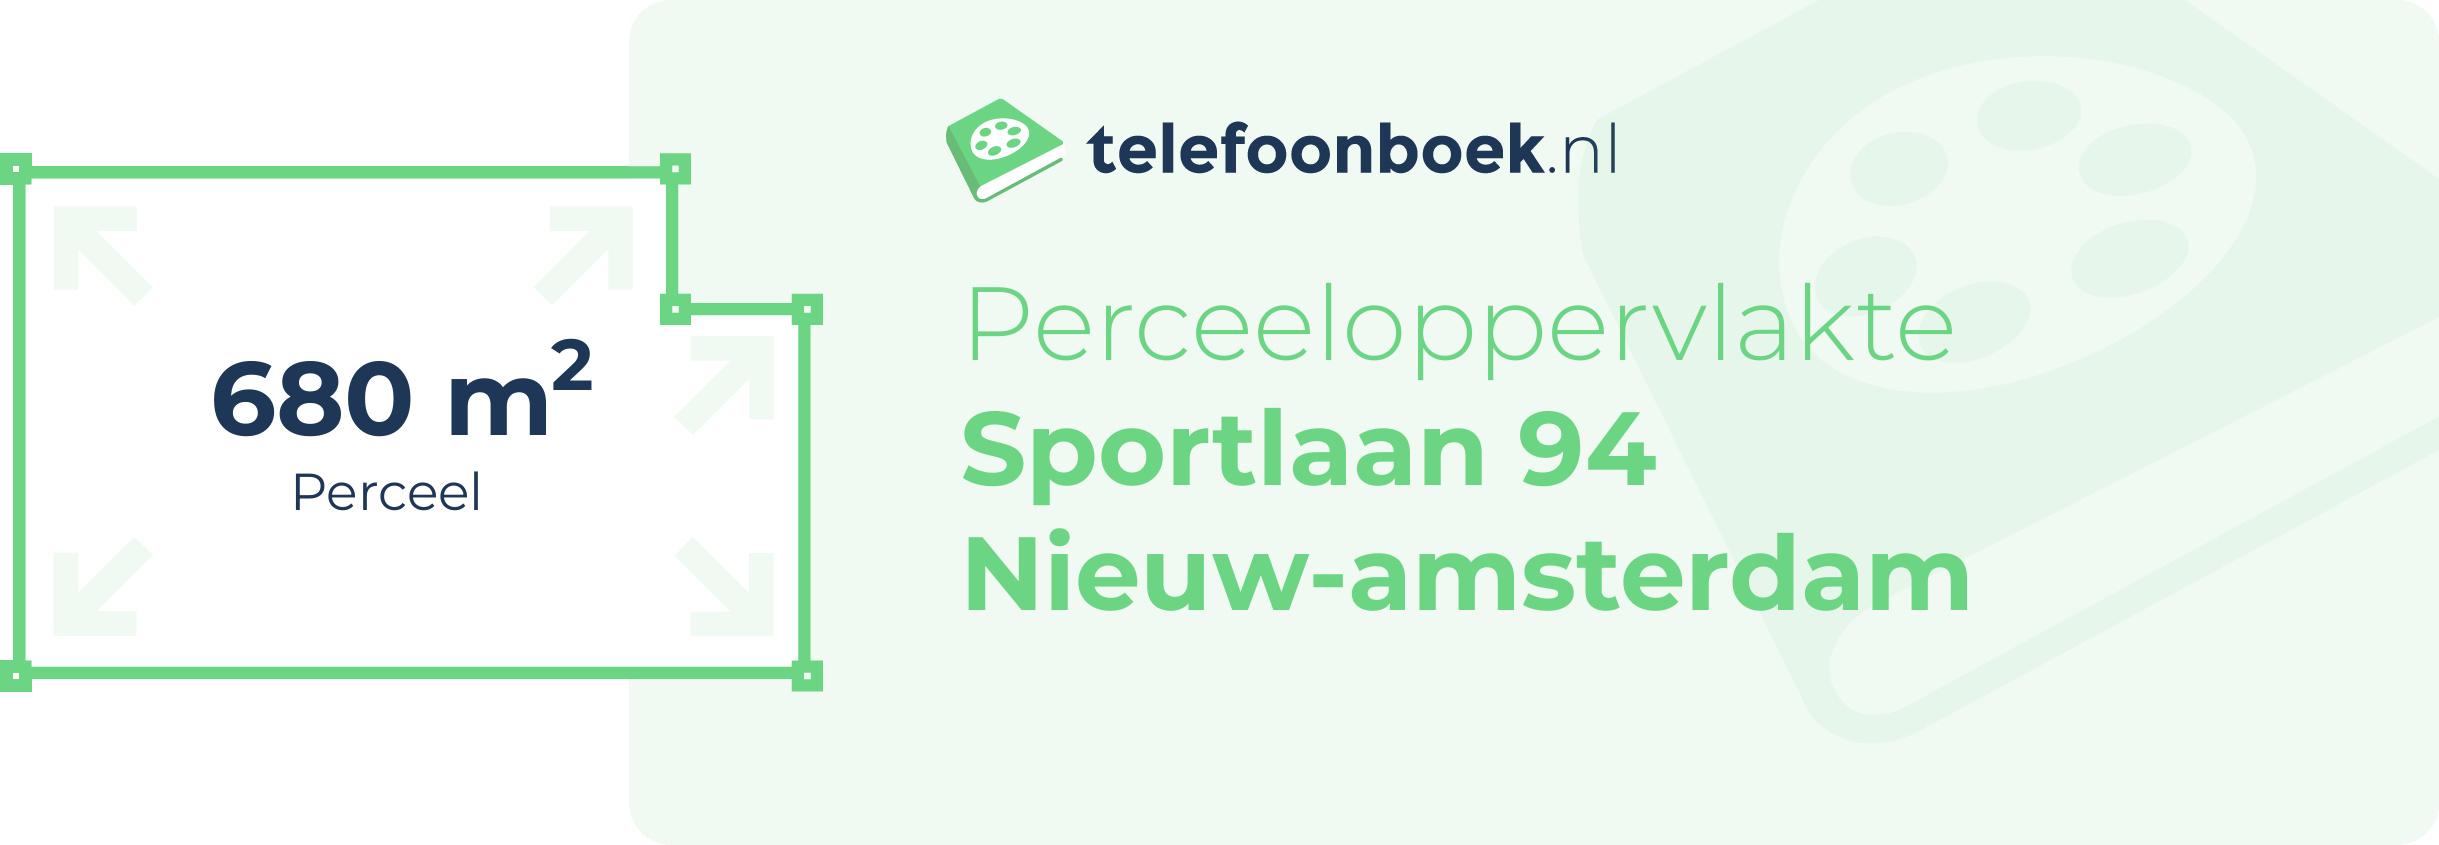 Perceeloppervlakte Sportlaan 94 Nieuw-Amsterdam